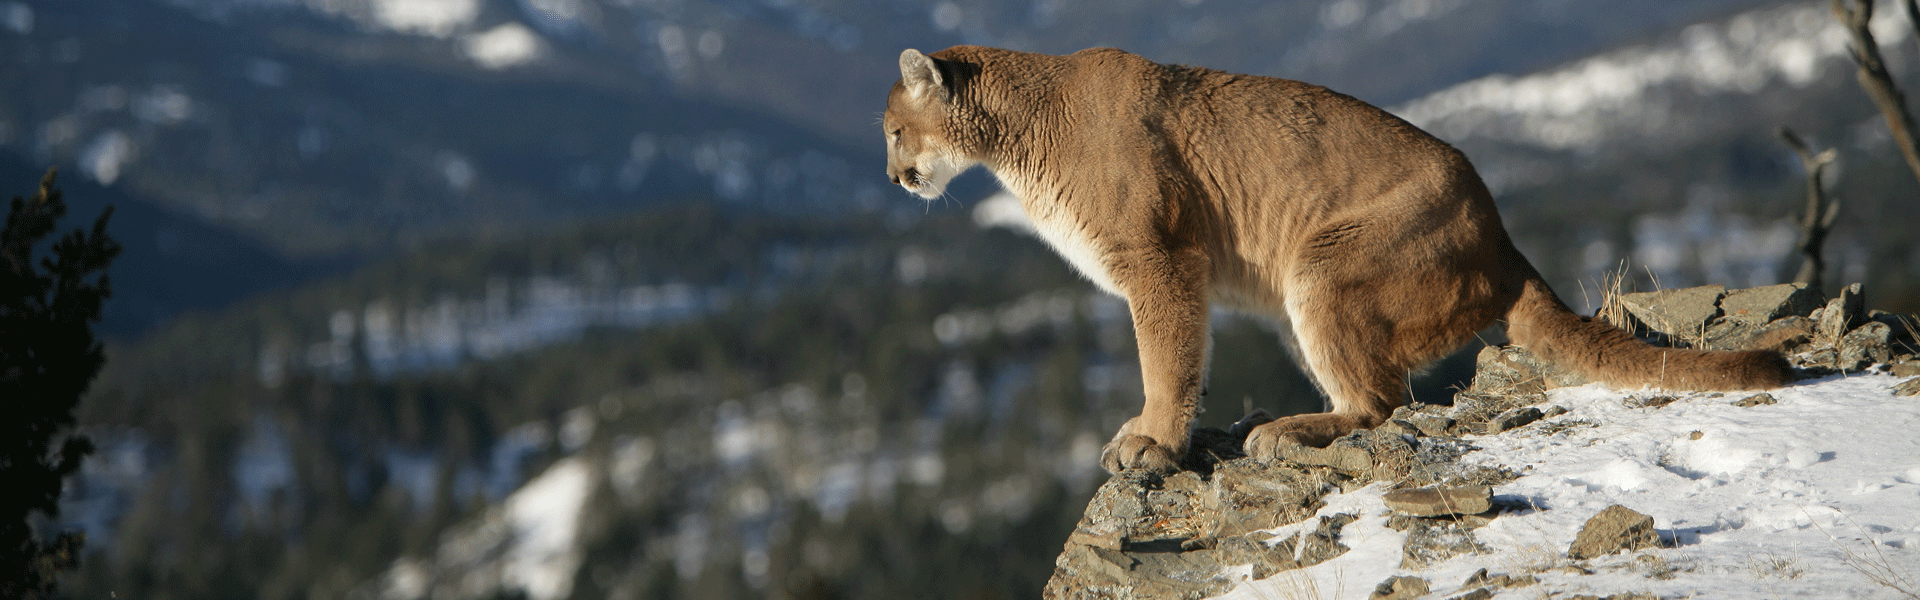 mountain lion